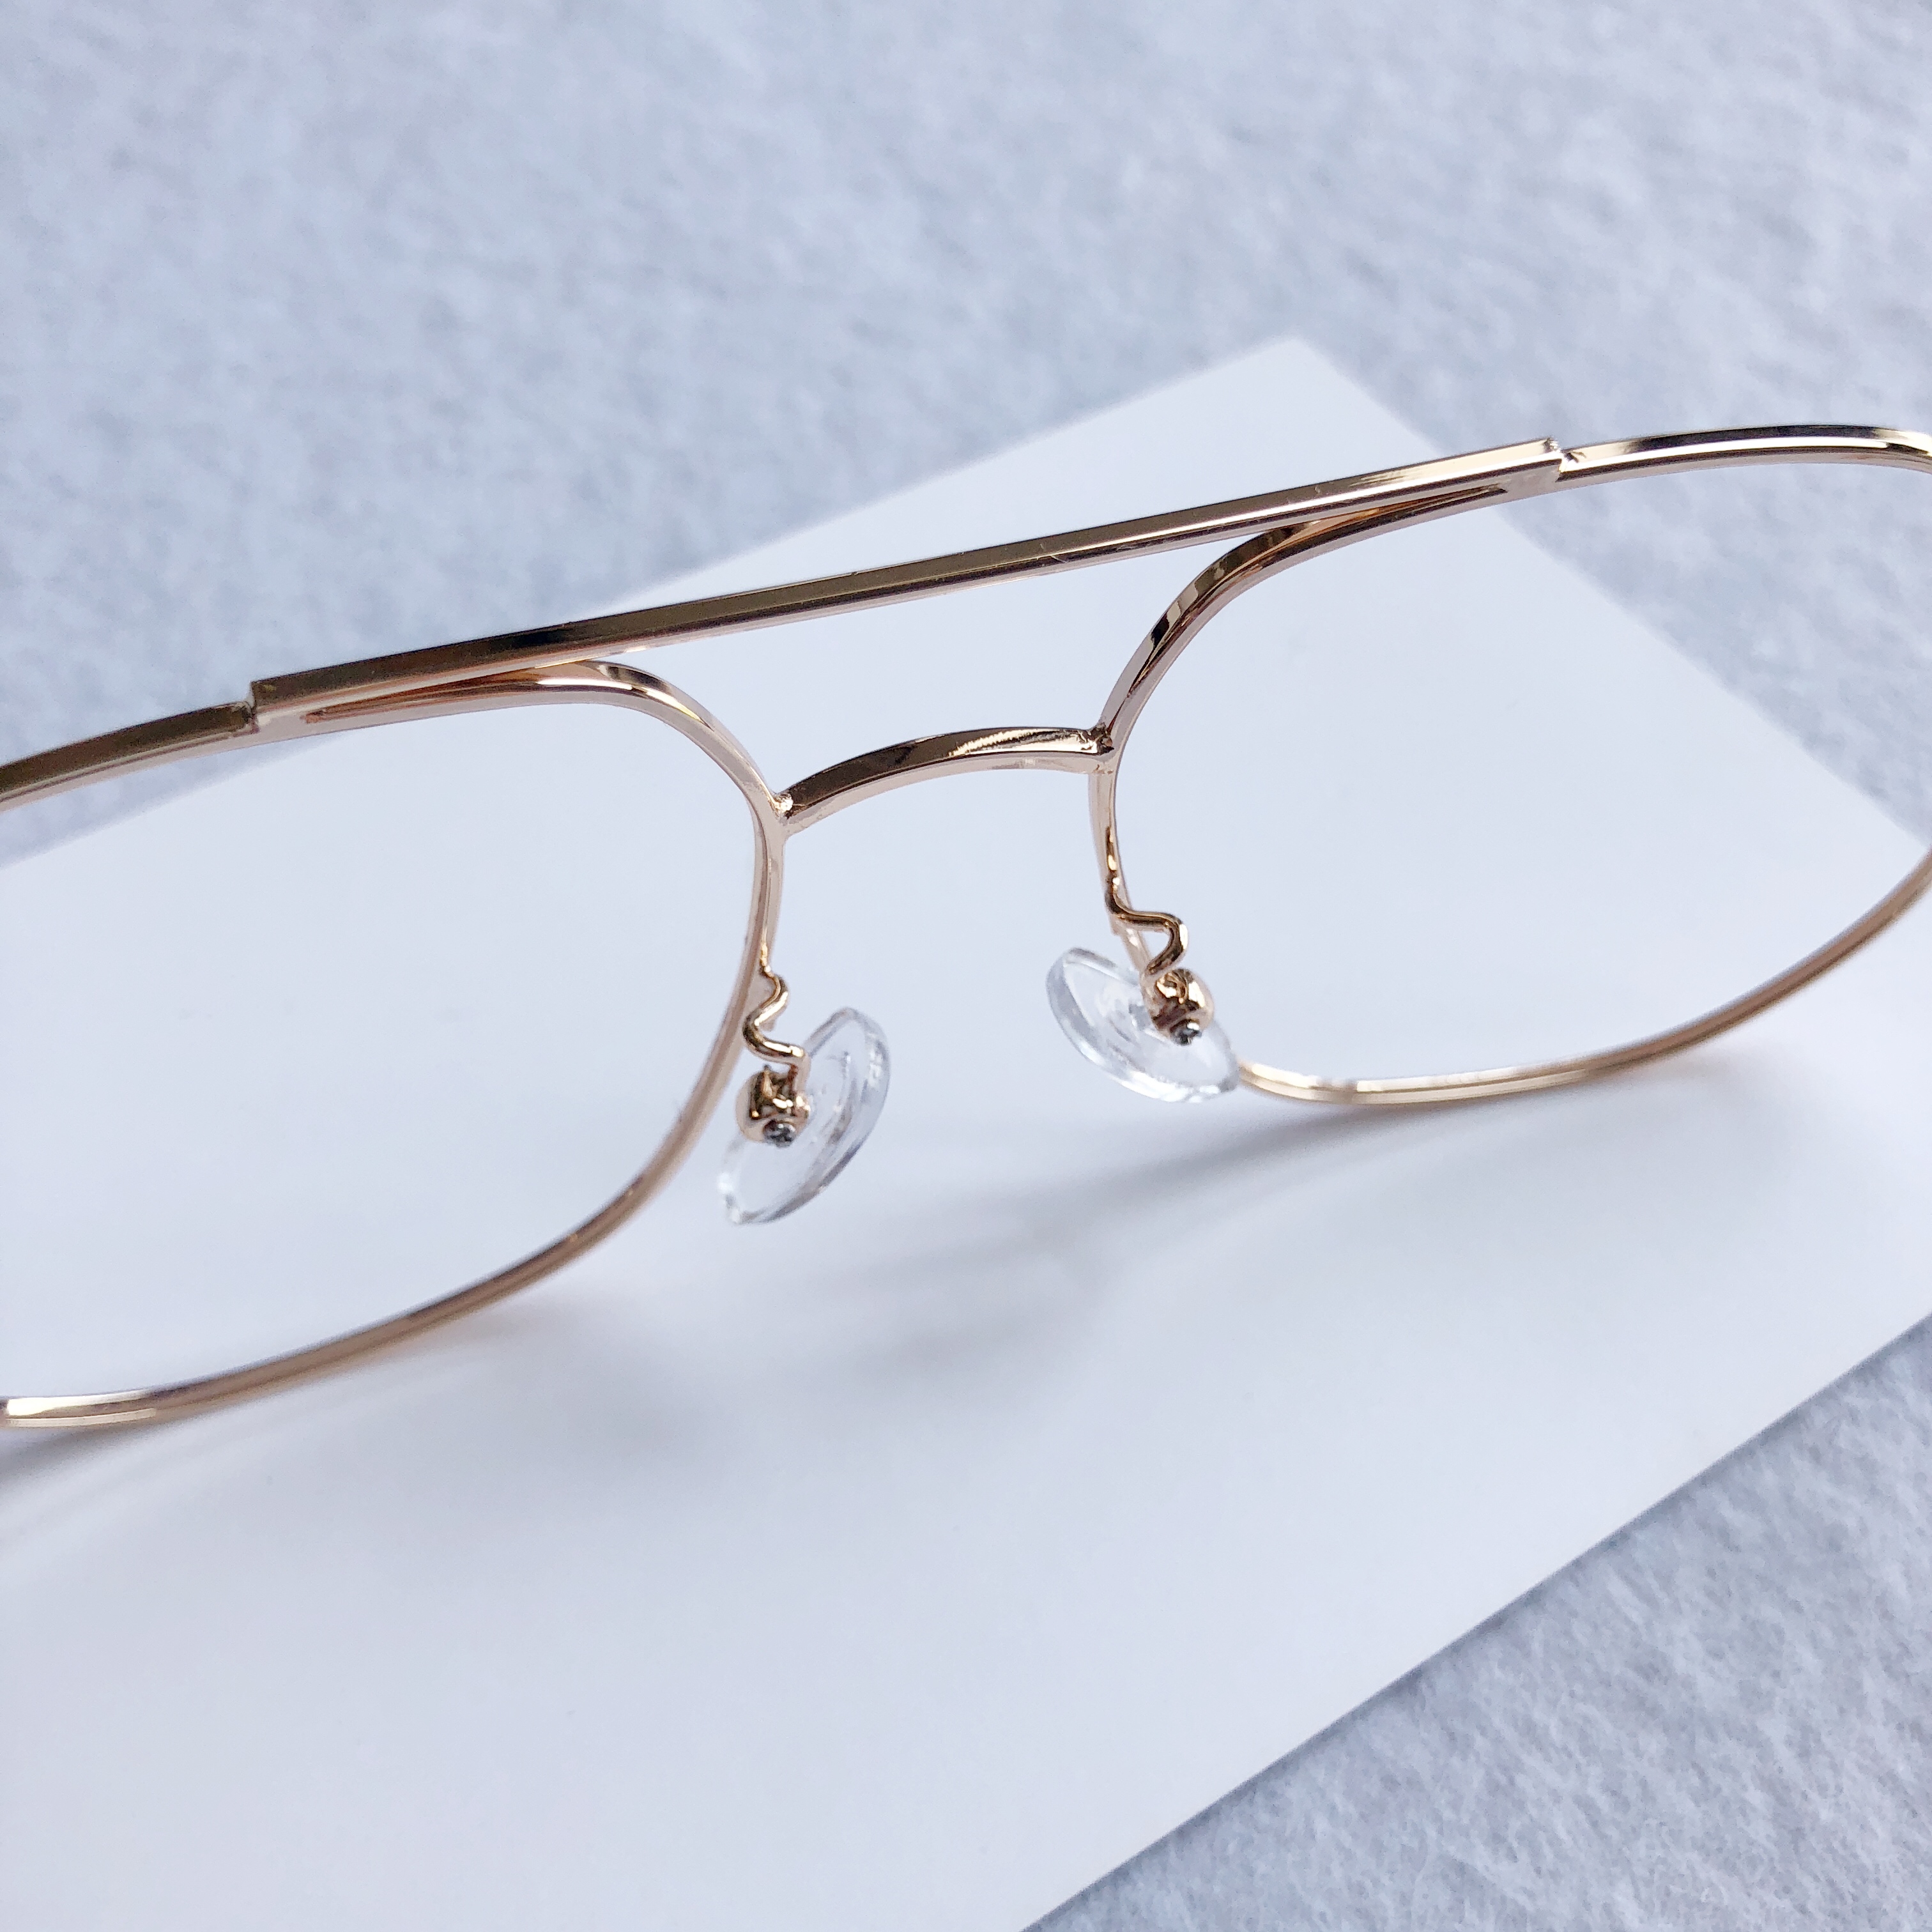 レンズメガネメタル男子眼鏡フルリム個性的金属製韓国ブランド アランミクリ